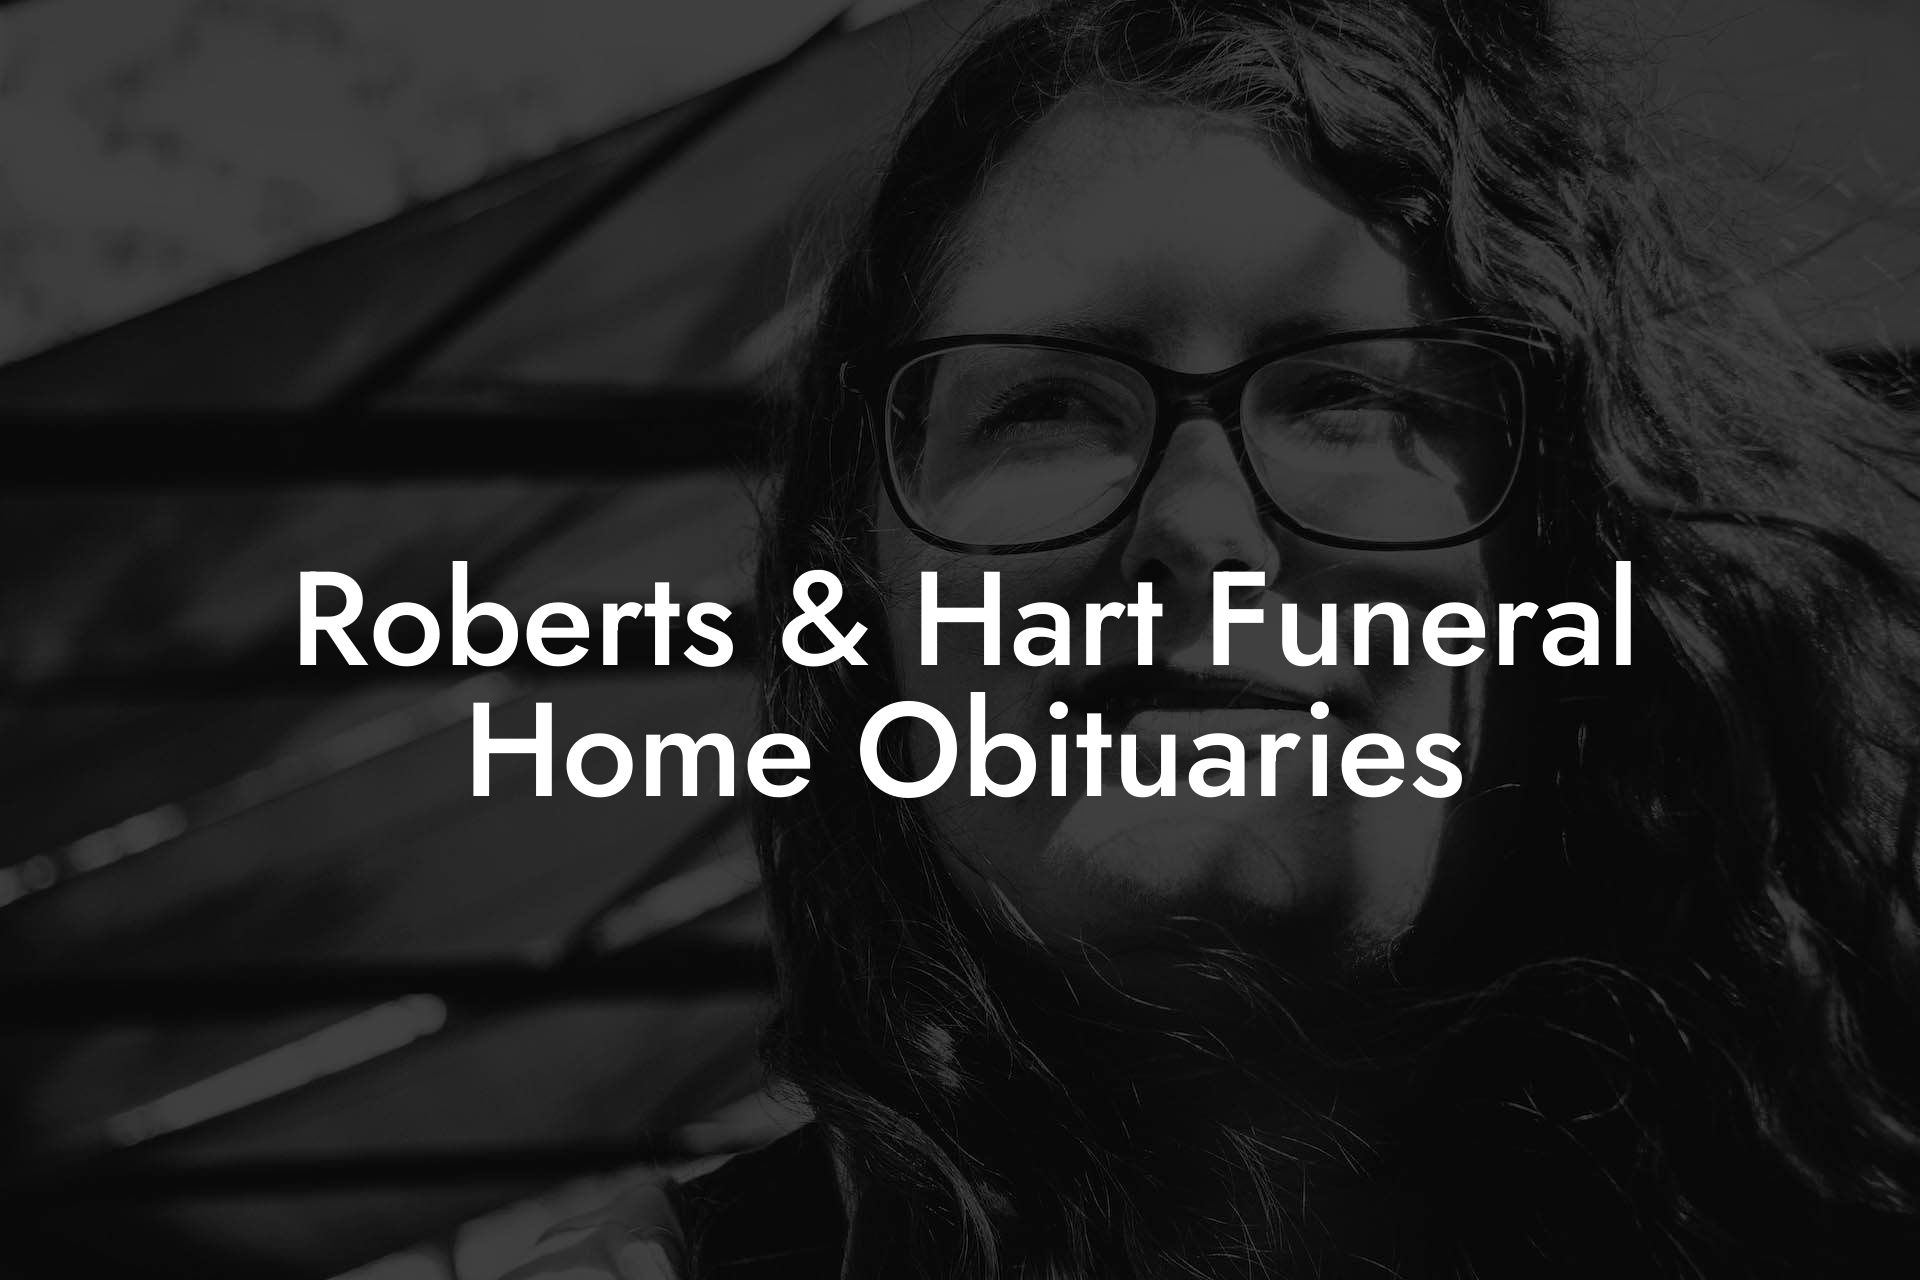 Roberts & Hart Funeral Home Obituaries